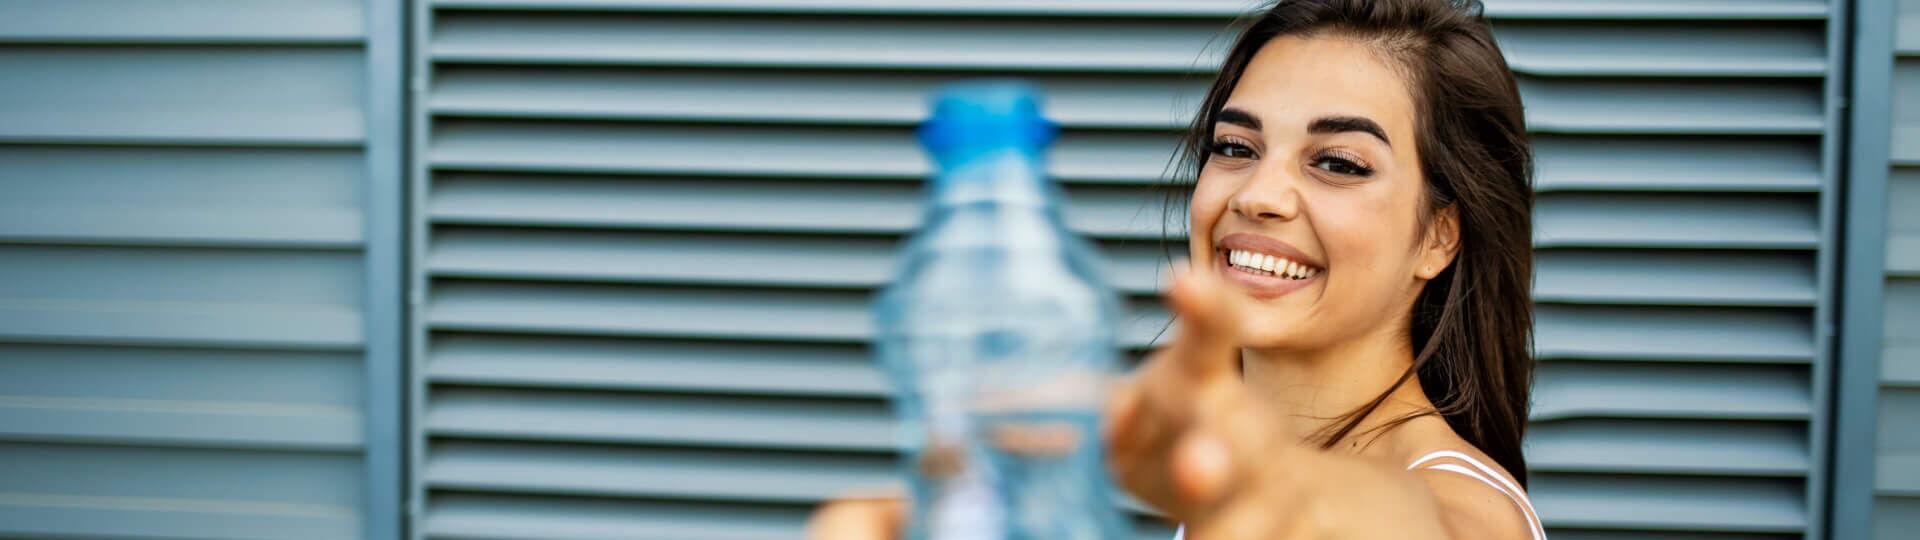 Eine Frau im Sportoutfit und Yogamatte in der Hand wird eine Wasserflasche gereicht